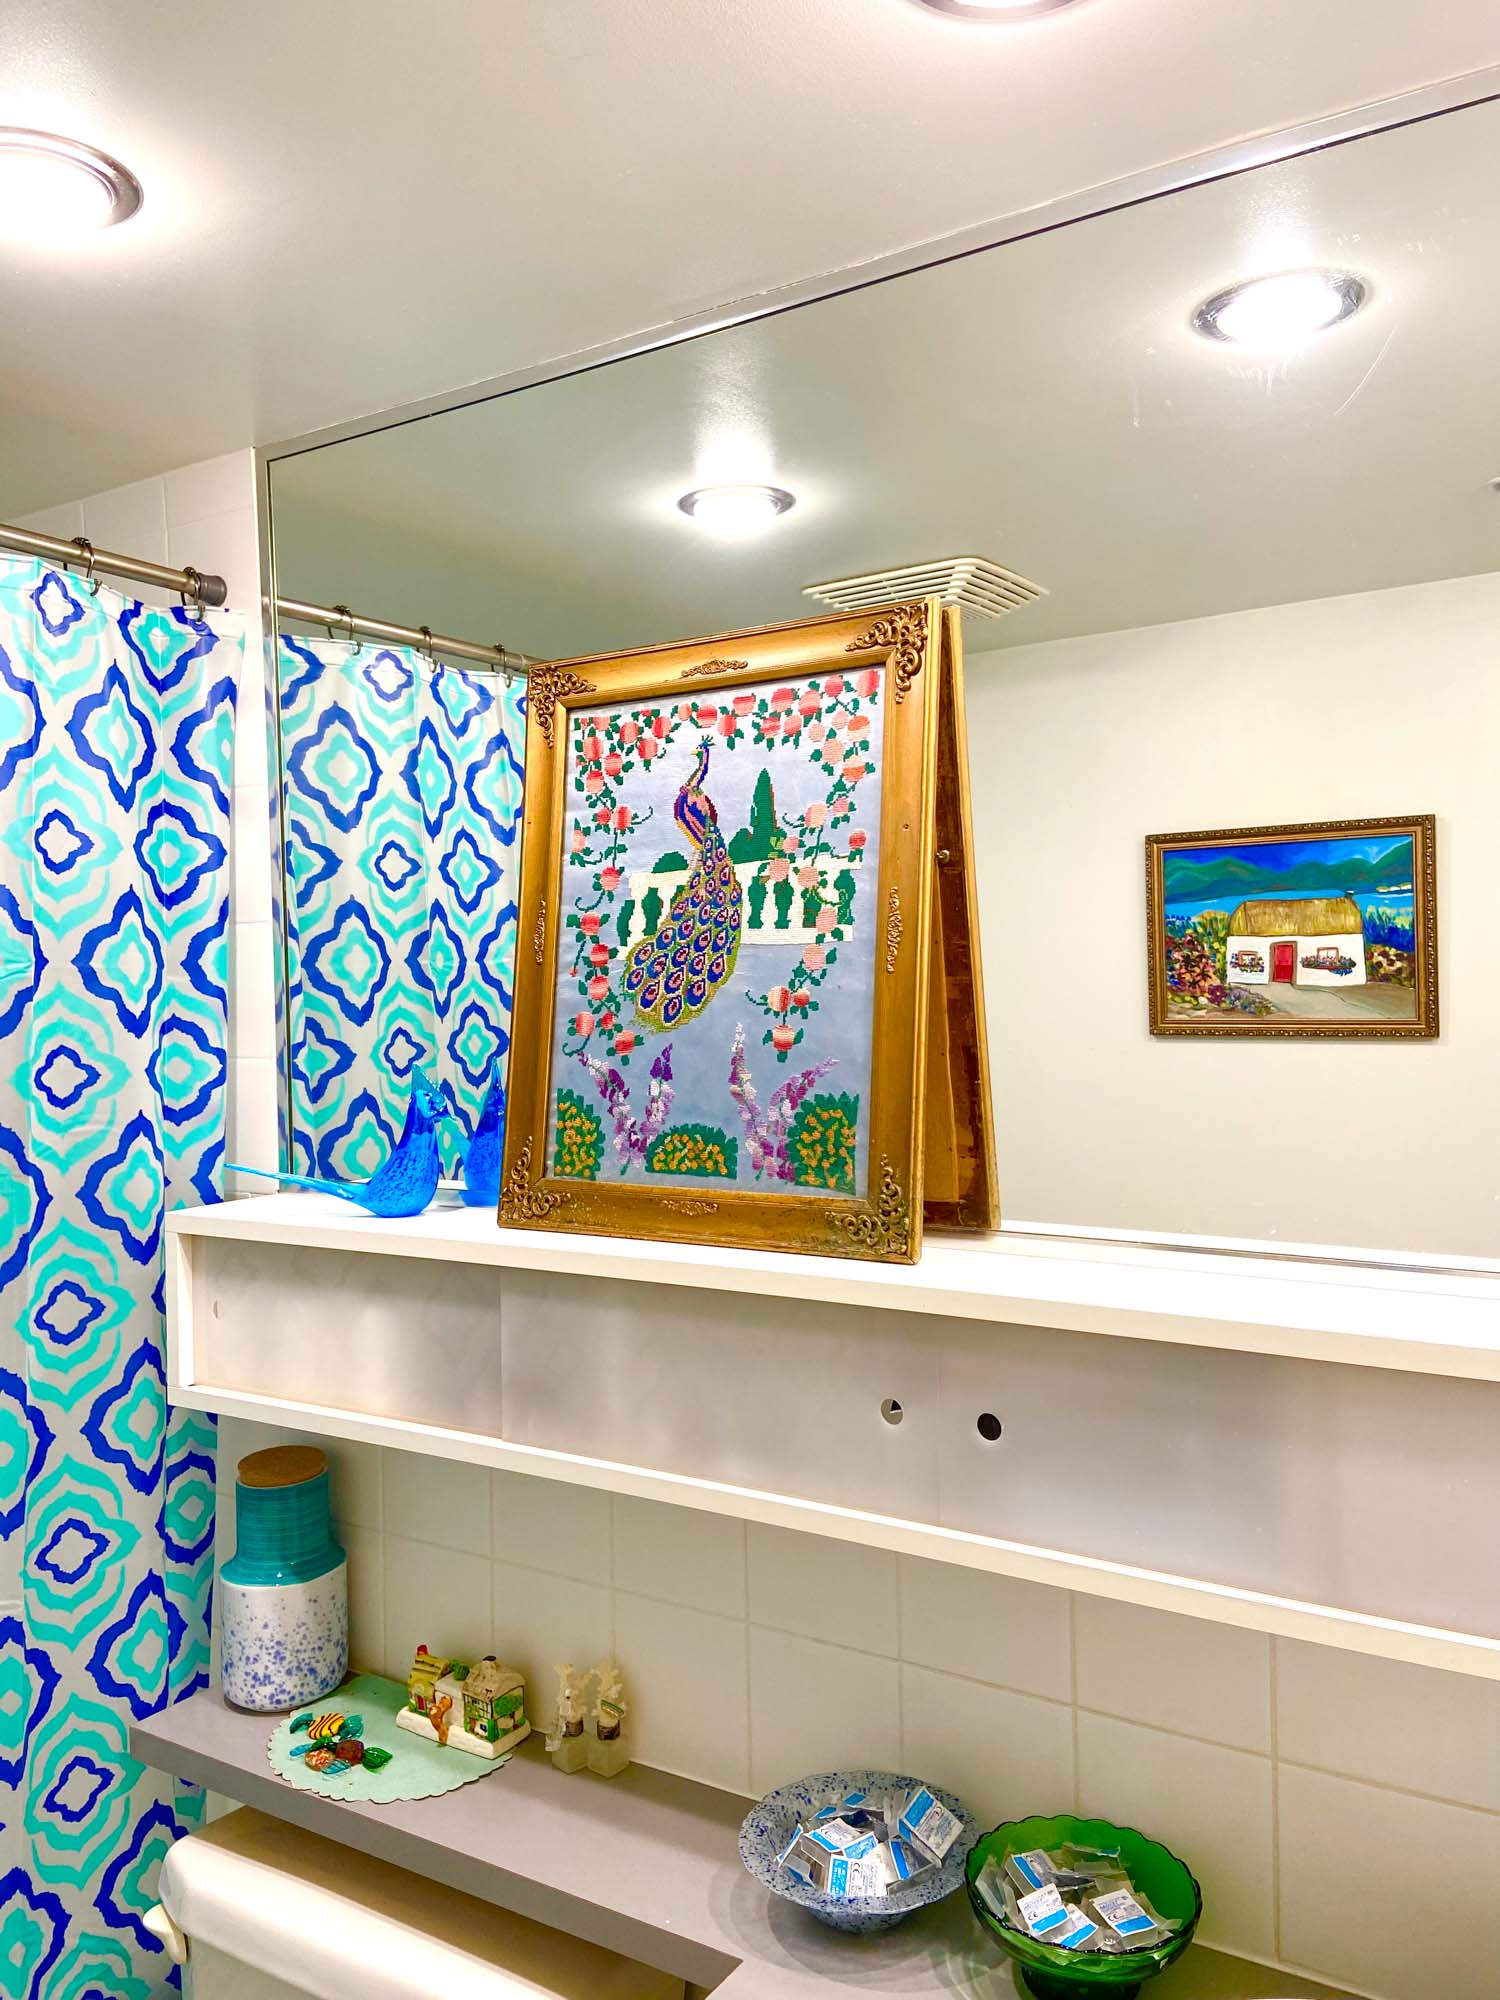 エリアごとにテーマを変えているという may さん。バスルームは気分転換できるよう、思いきりカラフルな子供部屋のようなイメージに。ヴィンテージの刺繍画や雑貨がたくさん飾られています。